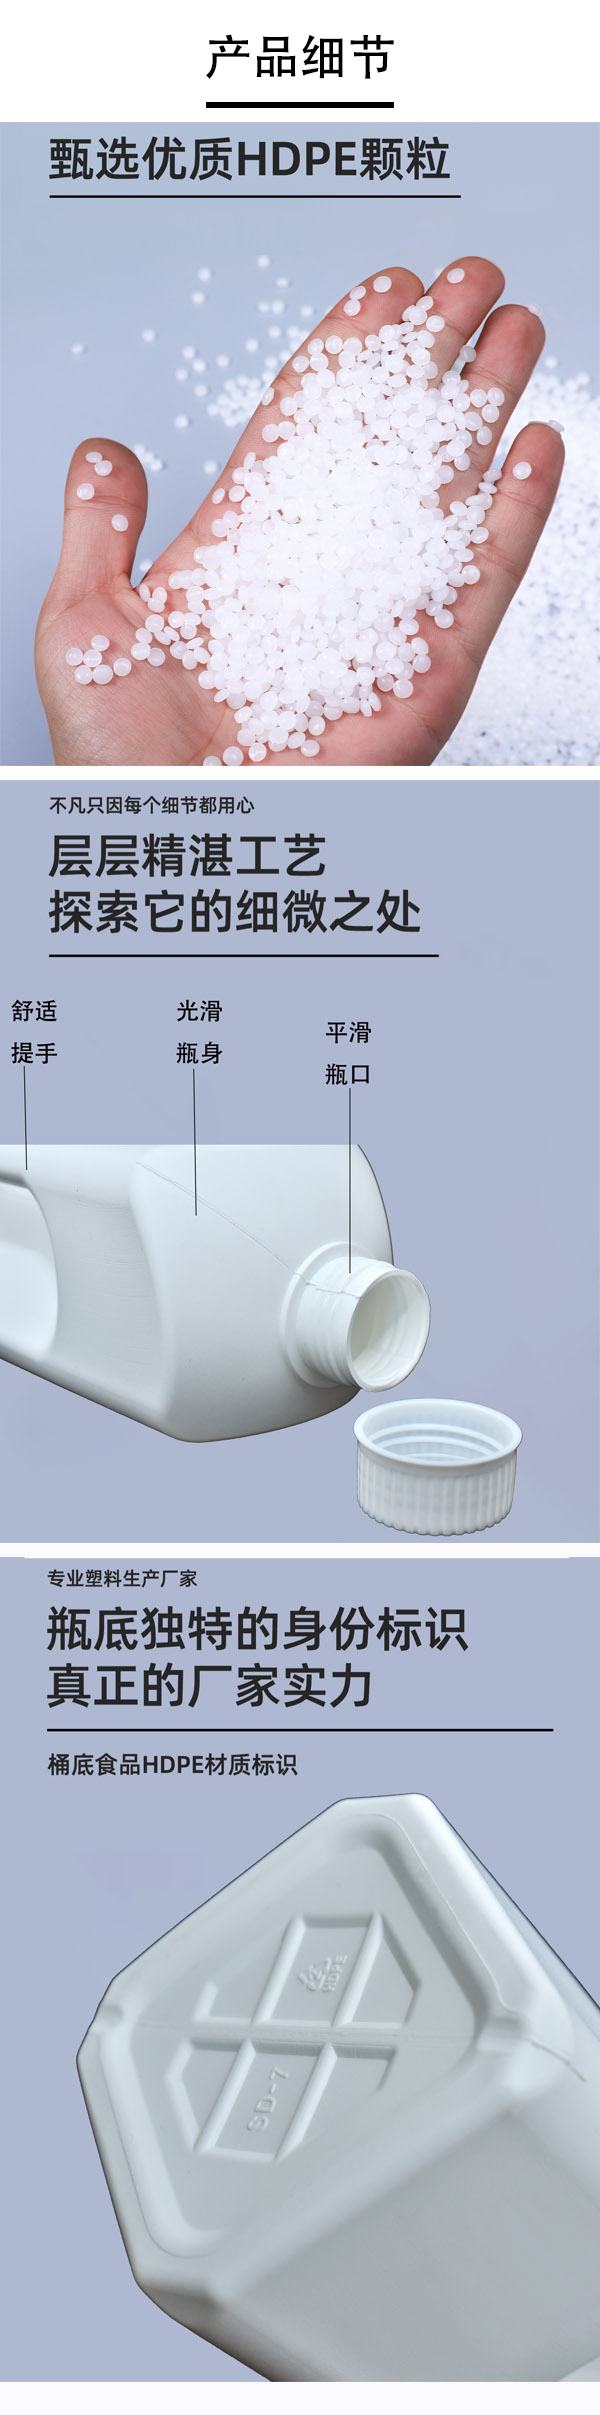 1.95L白色手提塑料桶生产厂家批发